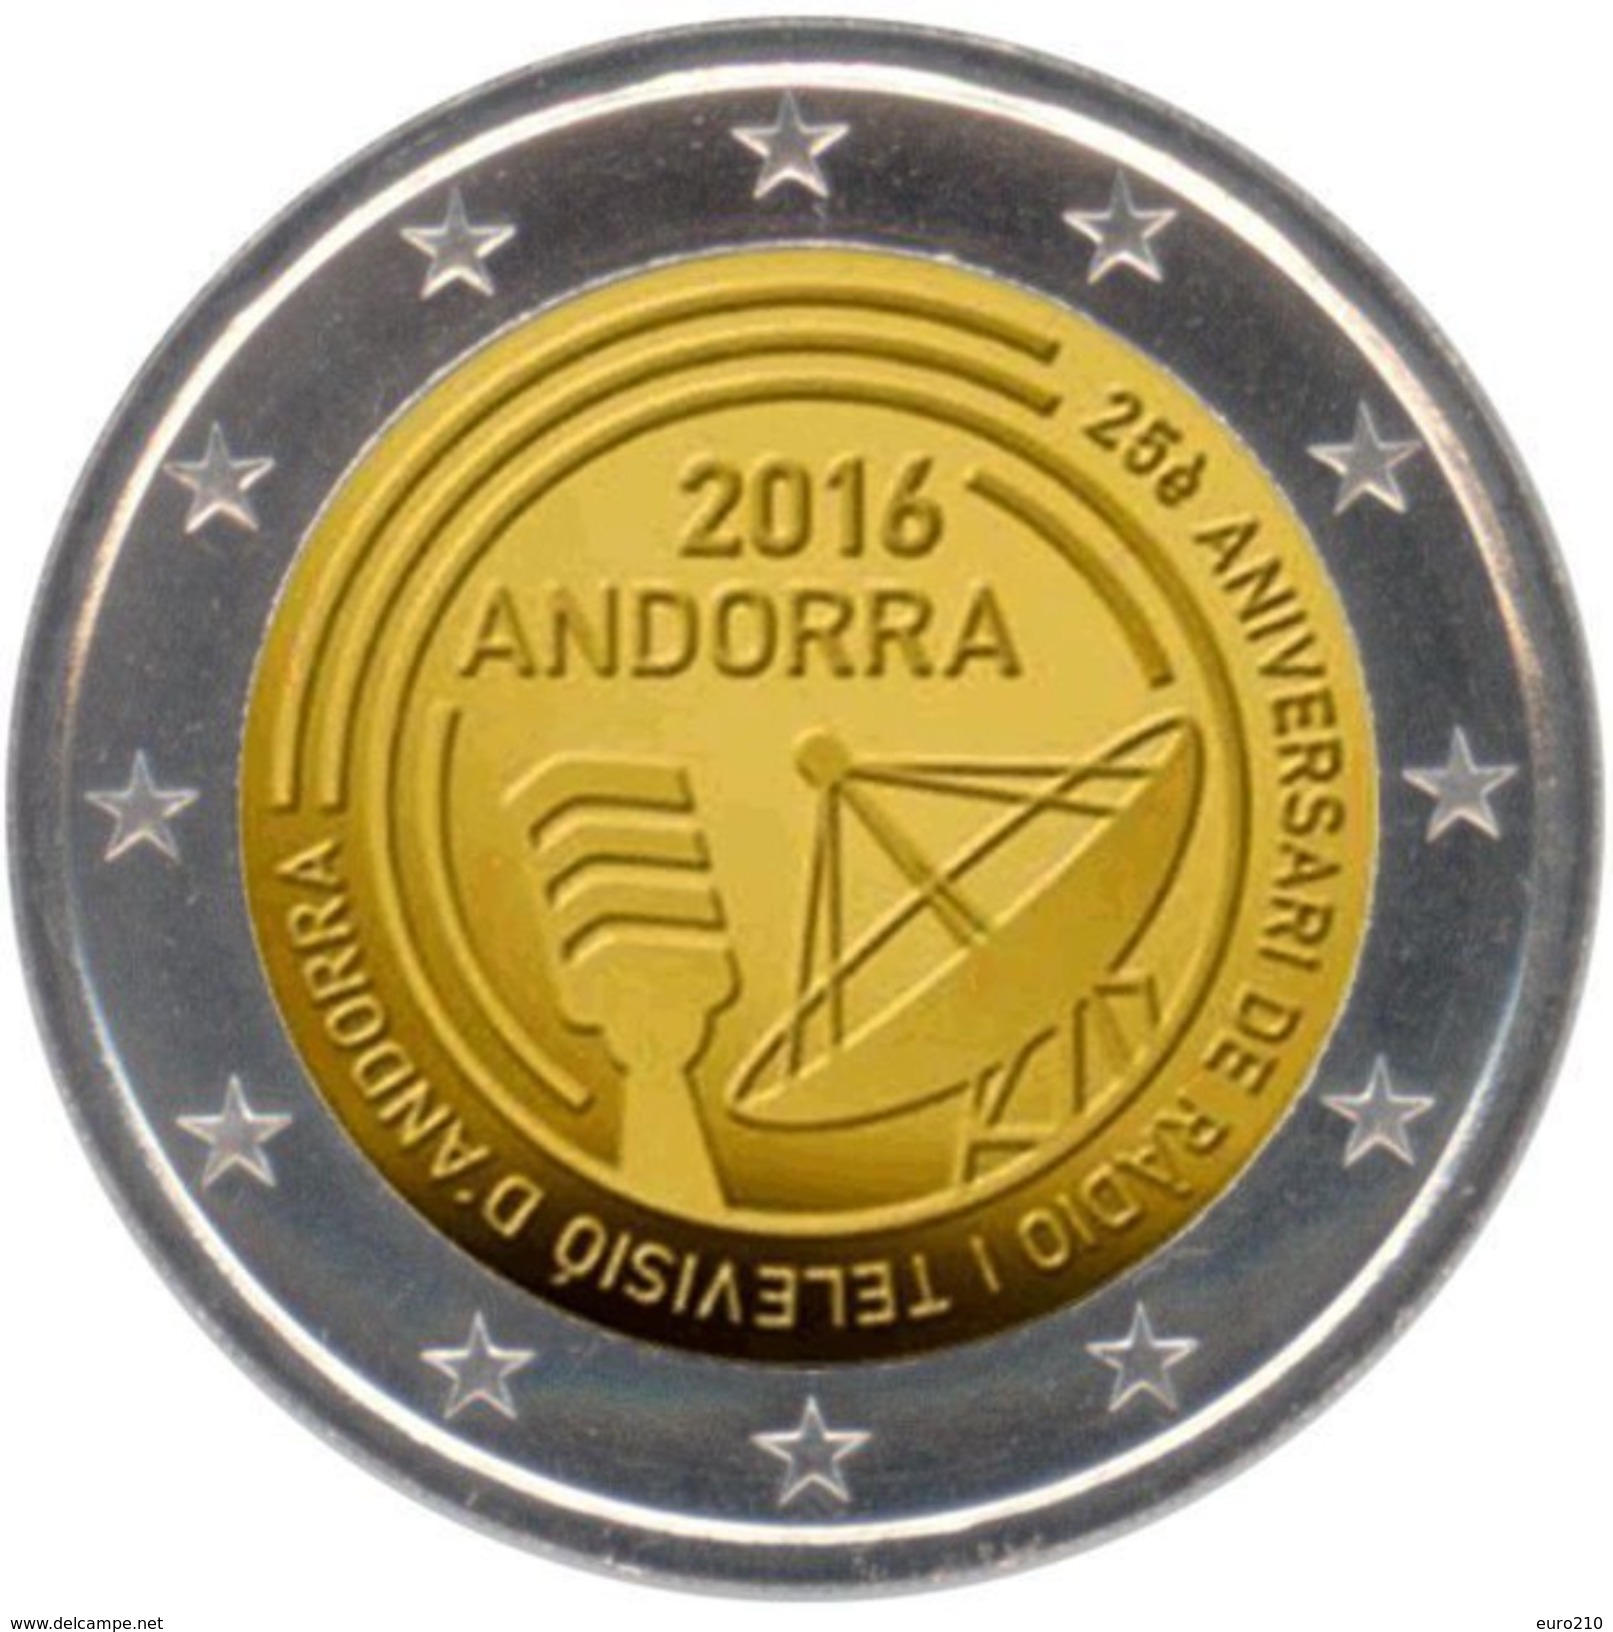 ANDORRA 2 Euro 2016 - Rundfunk In Andorra - Andorra